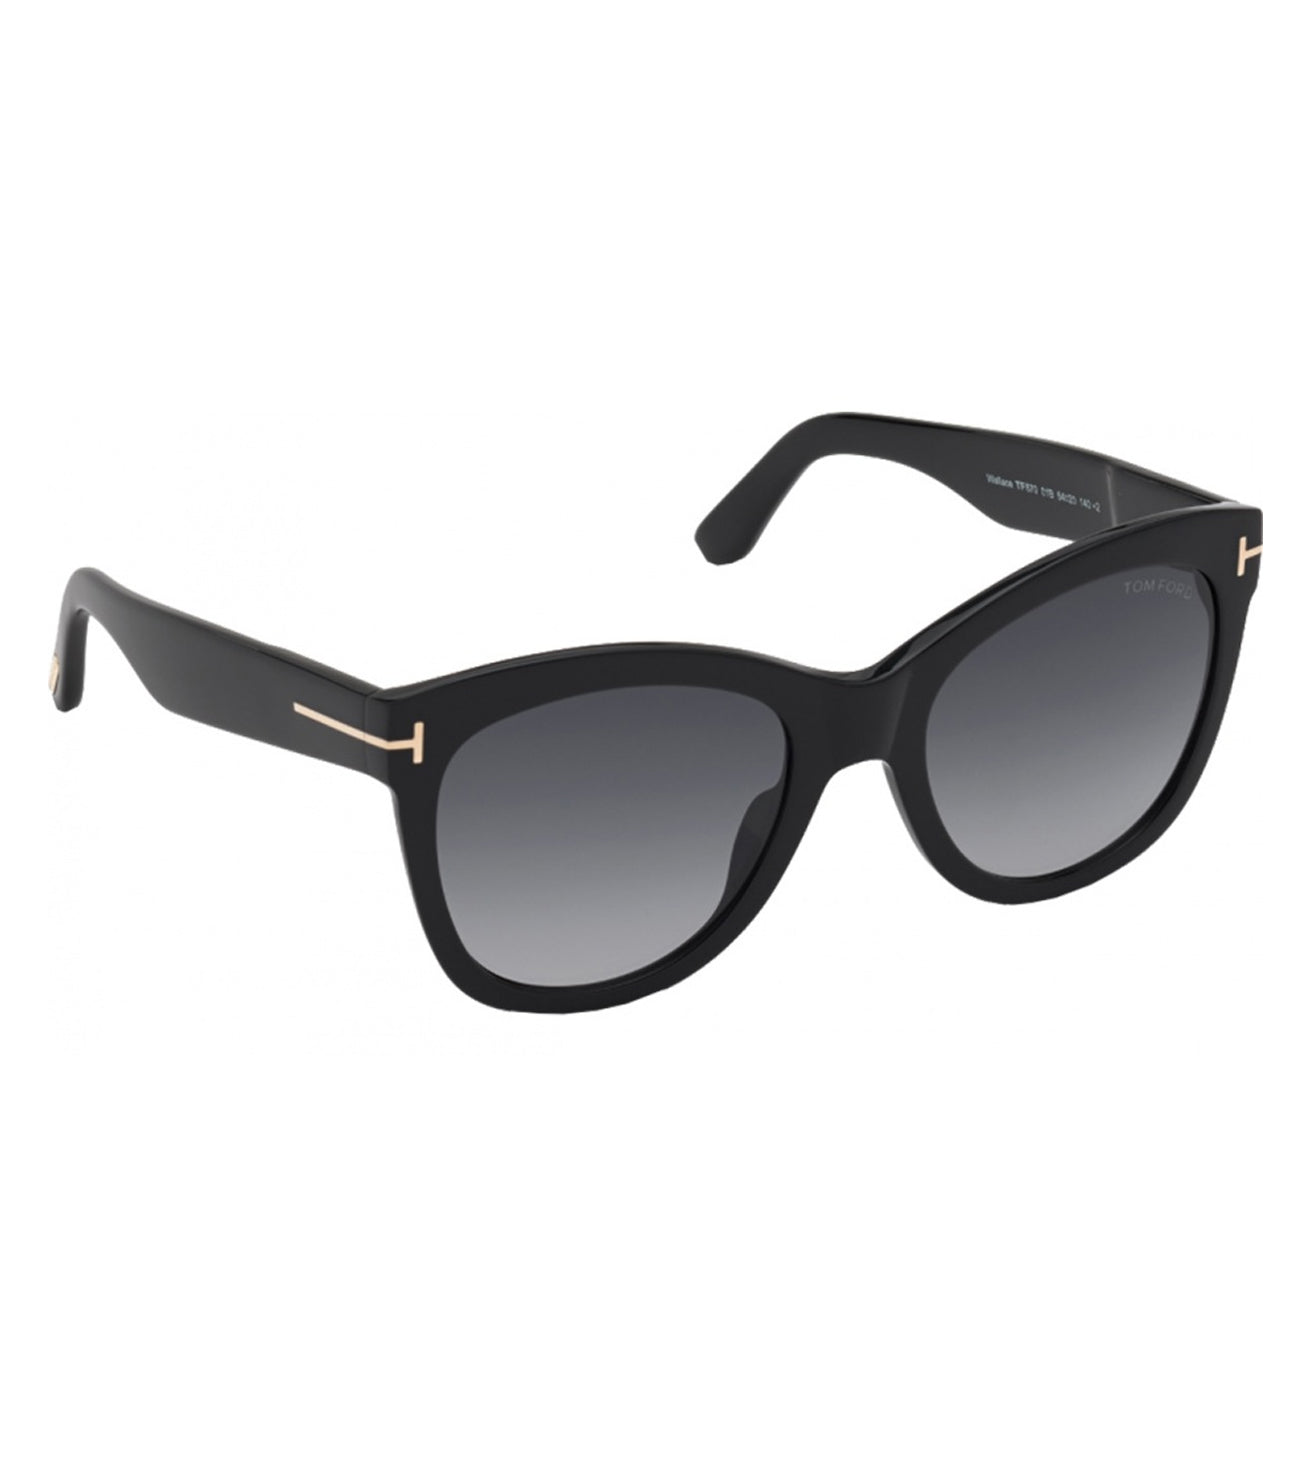 Tom Ford Unisex Black Cat-eye Sunglasses